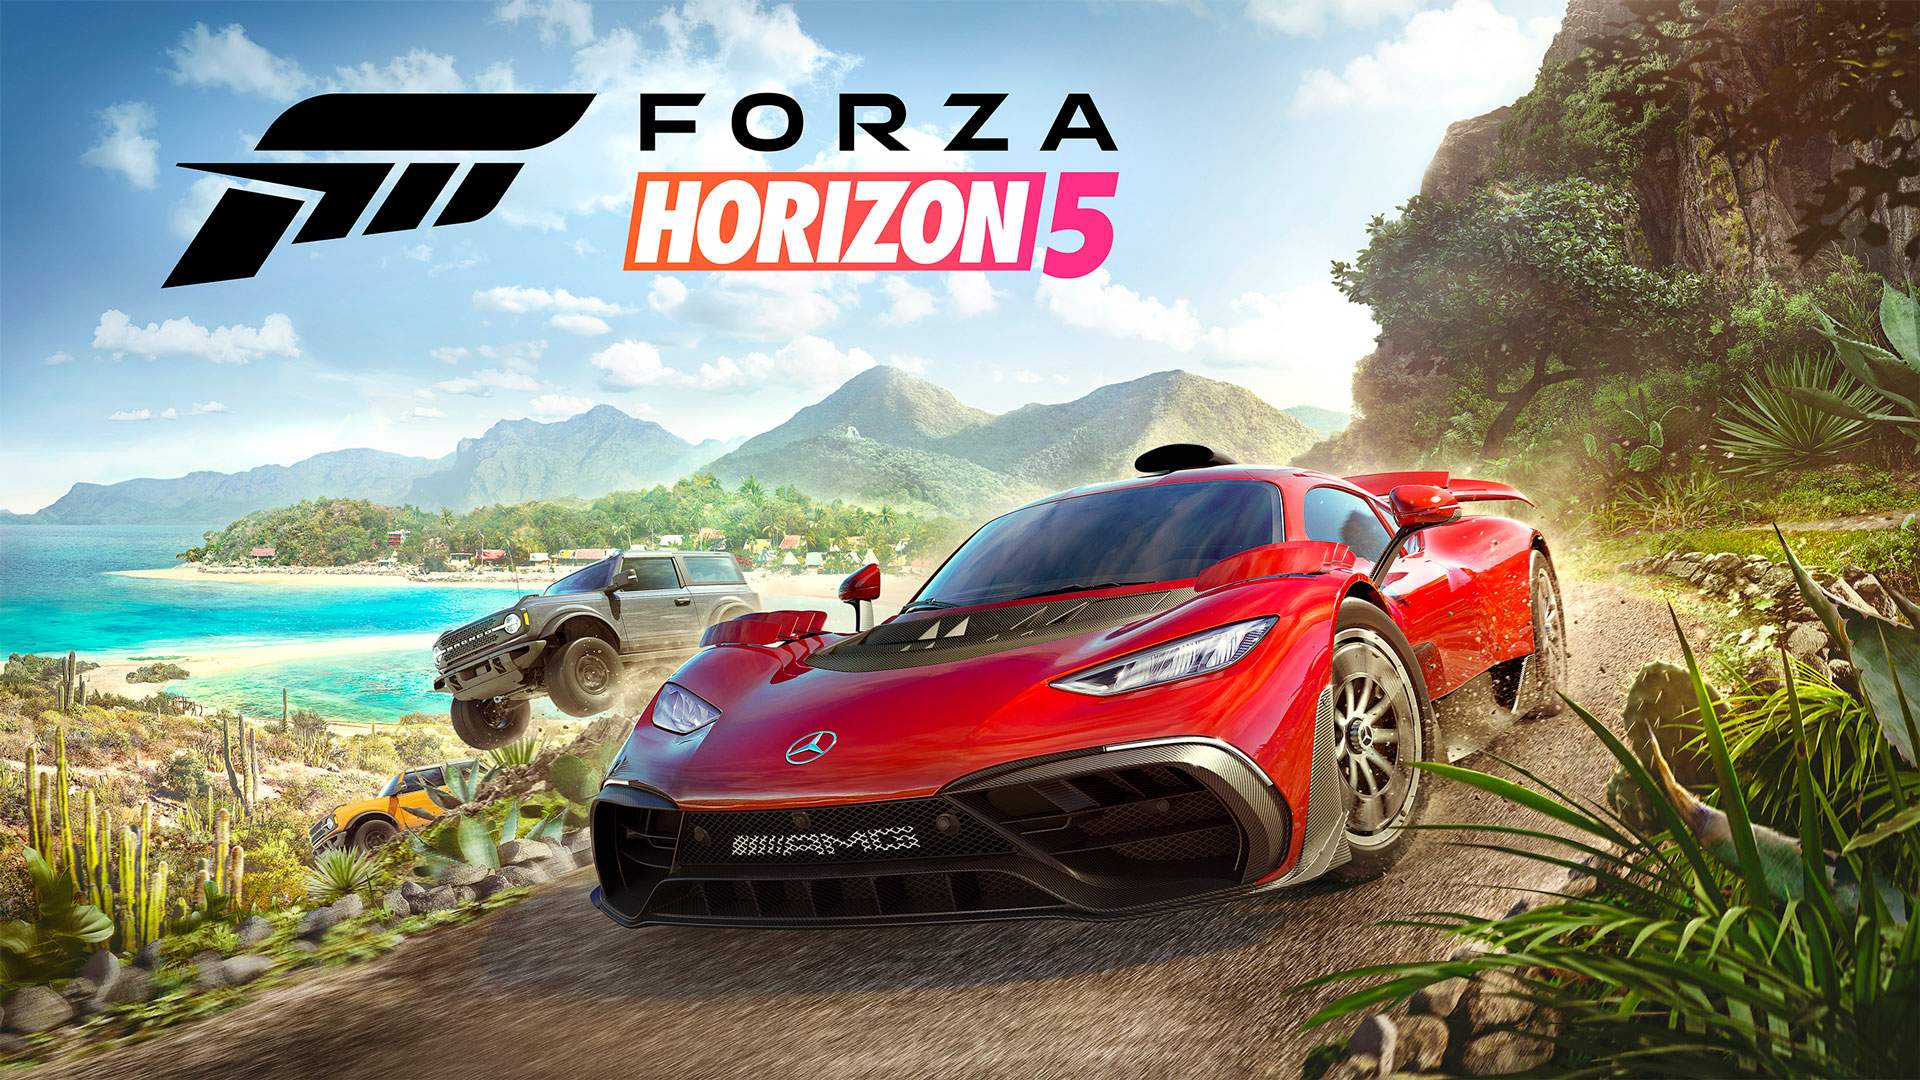 Une fille a piraté Forza Horizon 5 avant sa sortie - le jeu est déjà sur les torrents